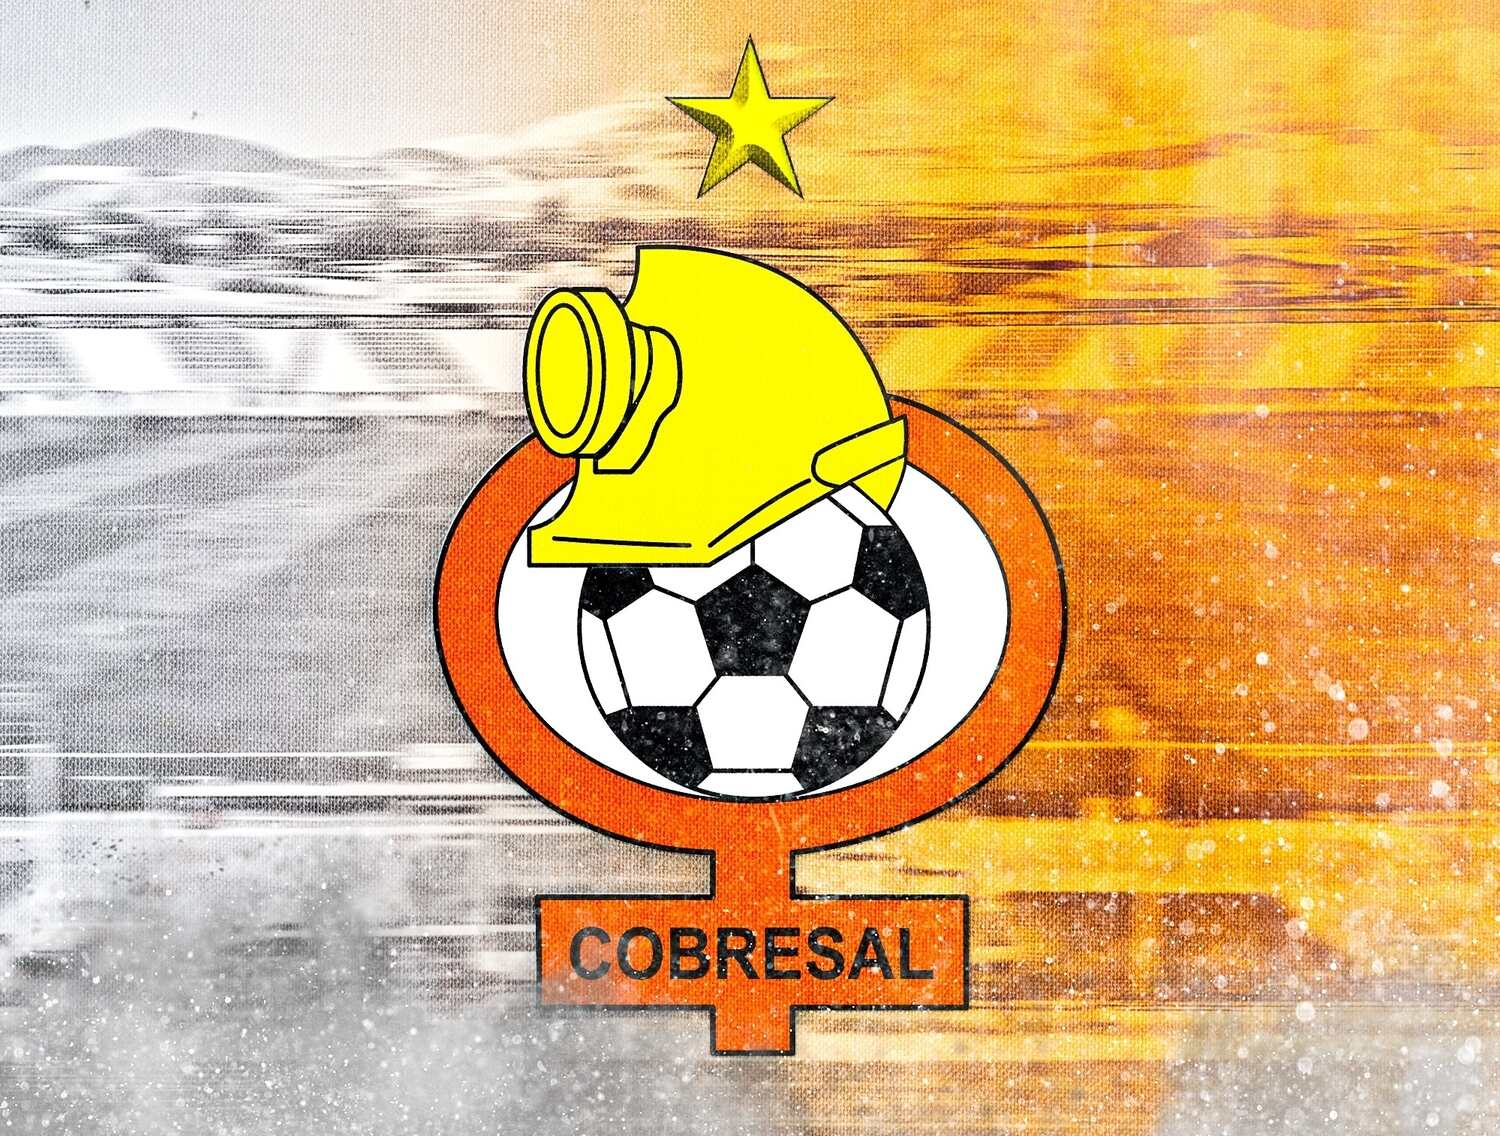 c-d-cobresal-10-football-club-facts